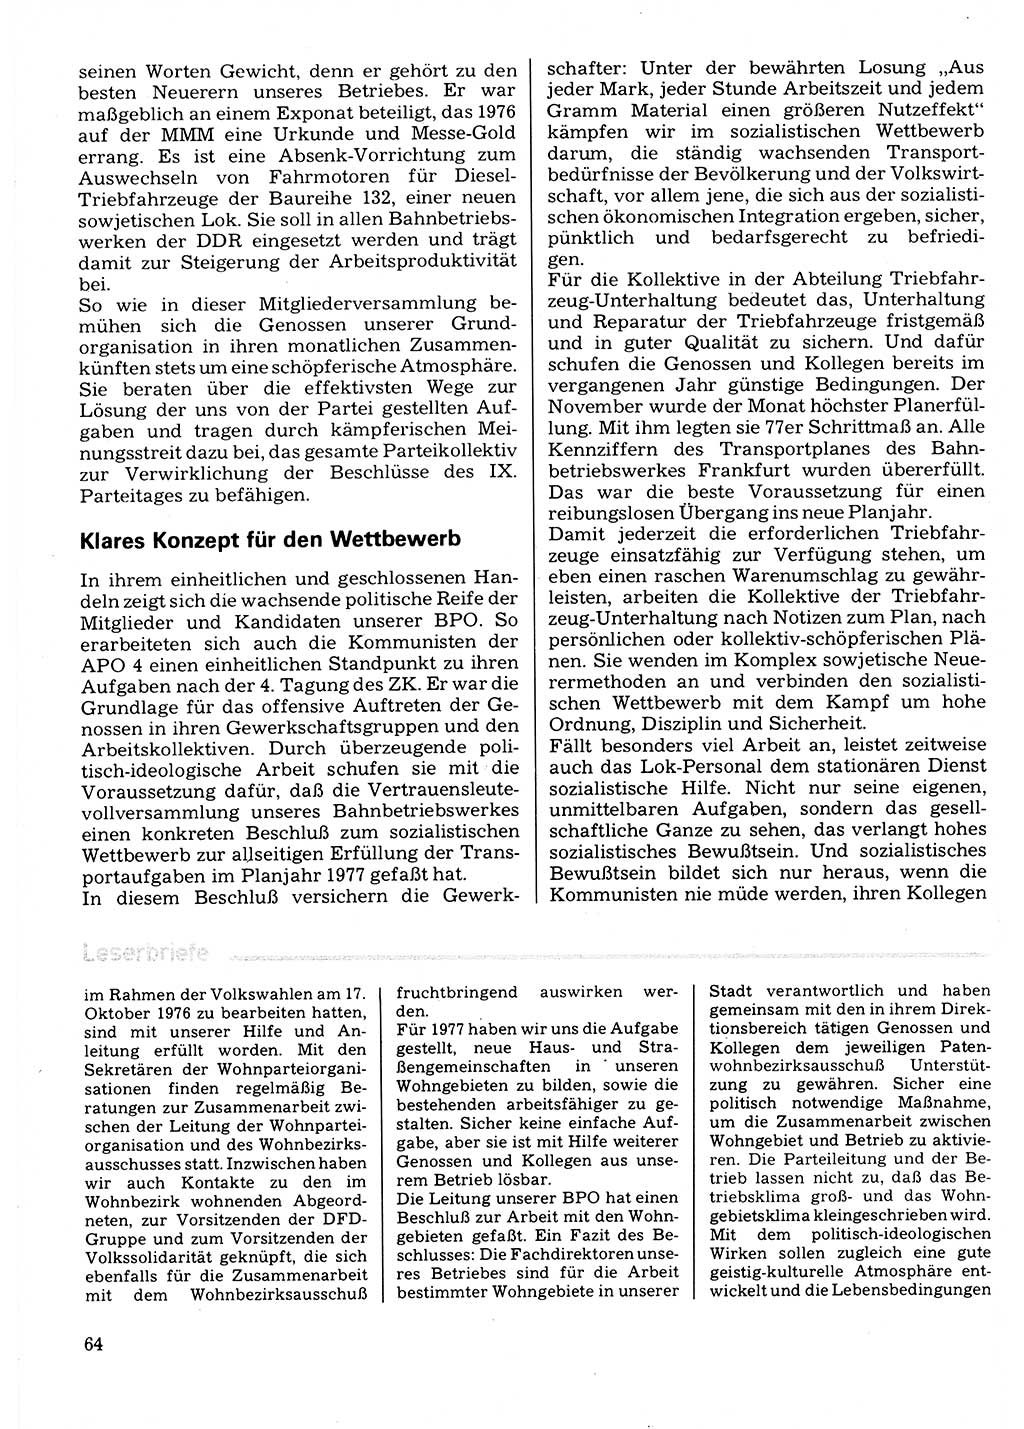 Neuer Weg (NW), Organ des Zentralkomitees (ZK) der SED (Sozialistische Einheitspartei Deutschlands) für Fragen des Parteilebens, 32. Jahrgang [Deutsche Demokratische Republik (DDR)] 1977, Seite 64 (NW ZK SED DDR 1977, S. 64)